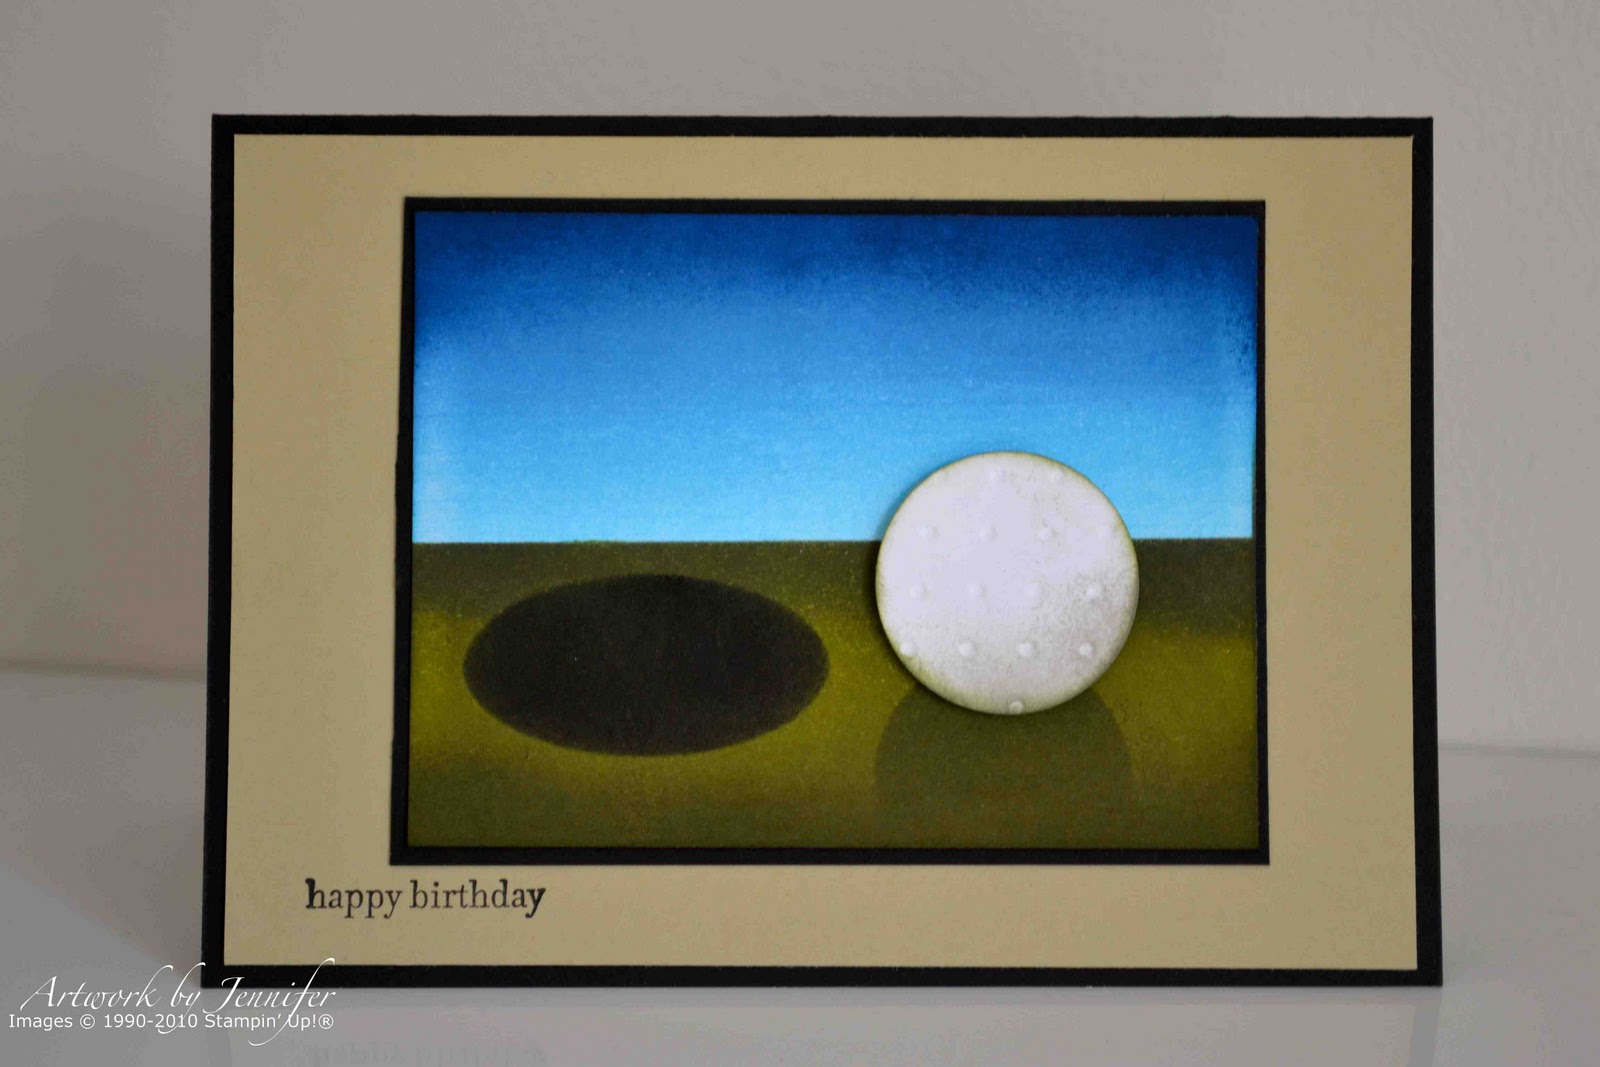 http://4.bp.blogspot.com/-wWB5HUrJieo/TYV4aqz618I/AAAAAAAAAWY/diXXd5unst8/s1600/Have+a+Golfing+Birthday.jpg